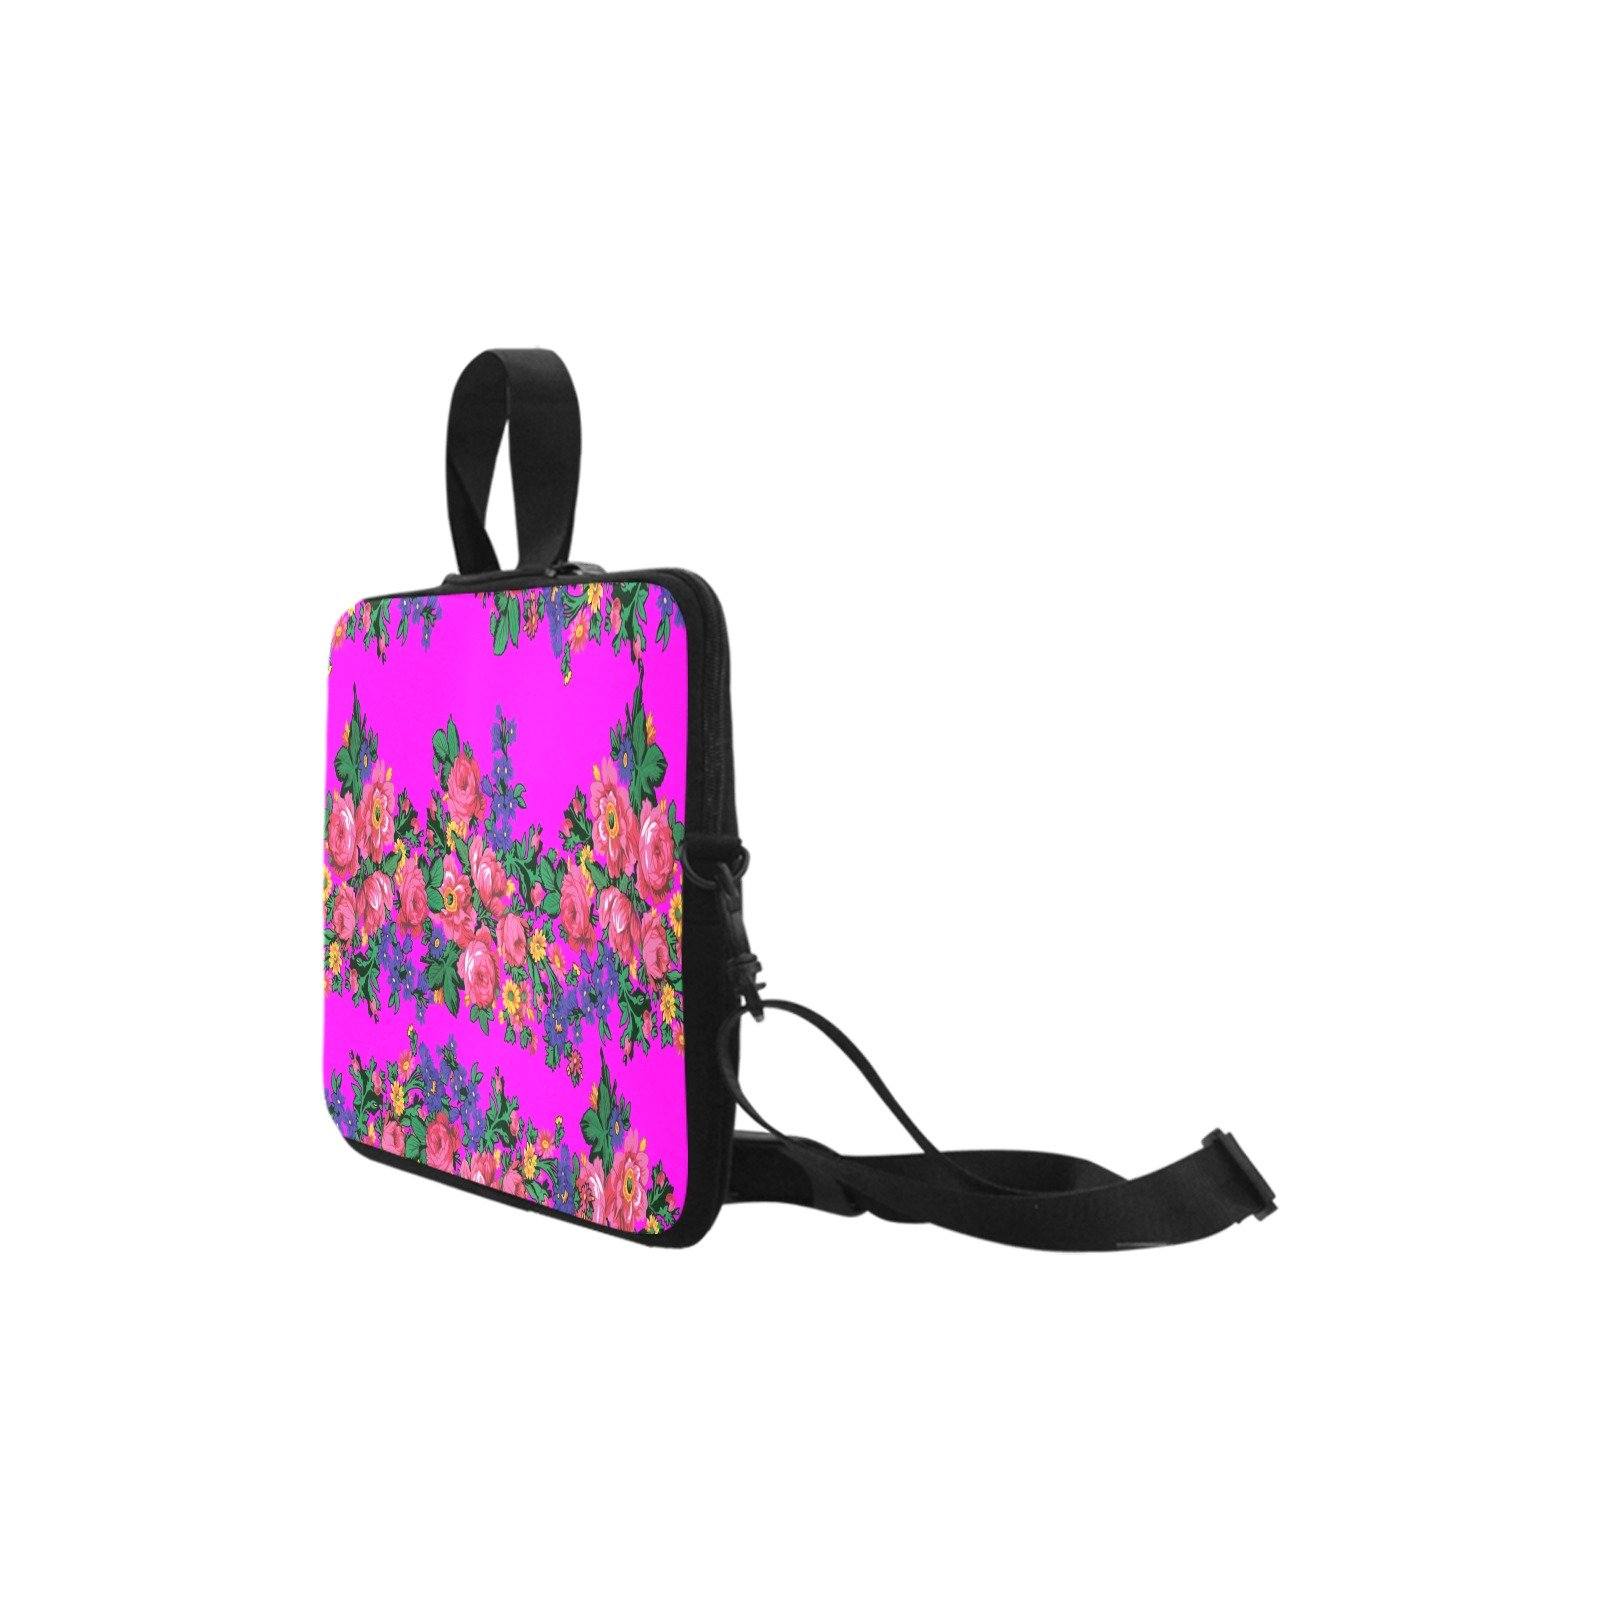 Kokum's Revenge Blush Laptop Handbags 14" bag e-joyer 